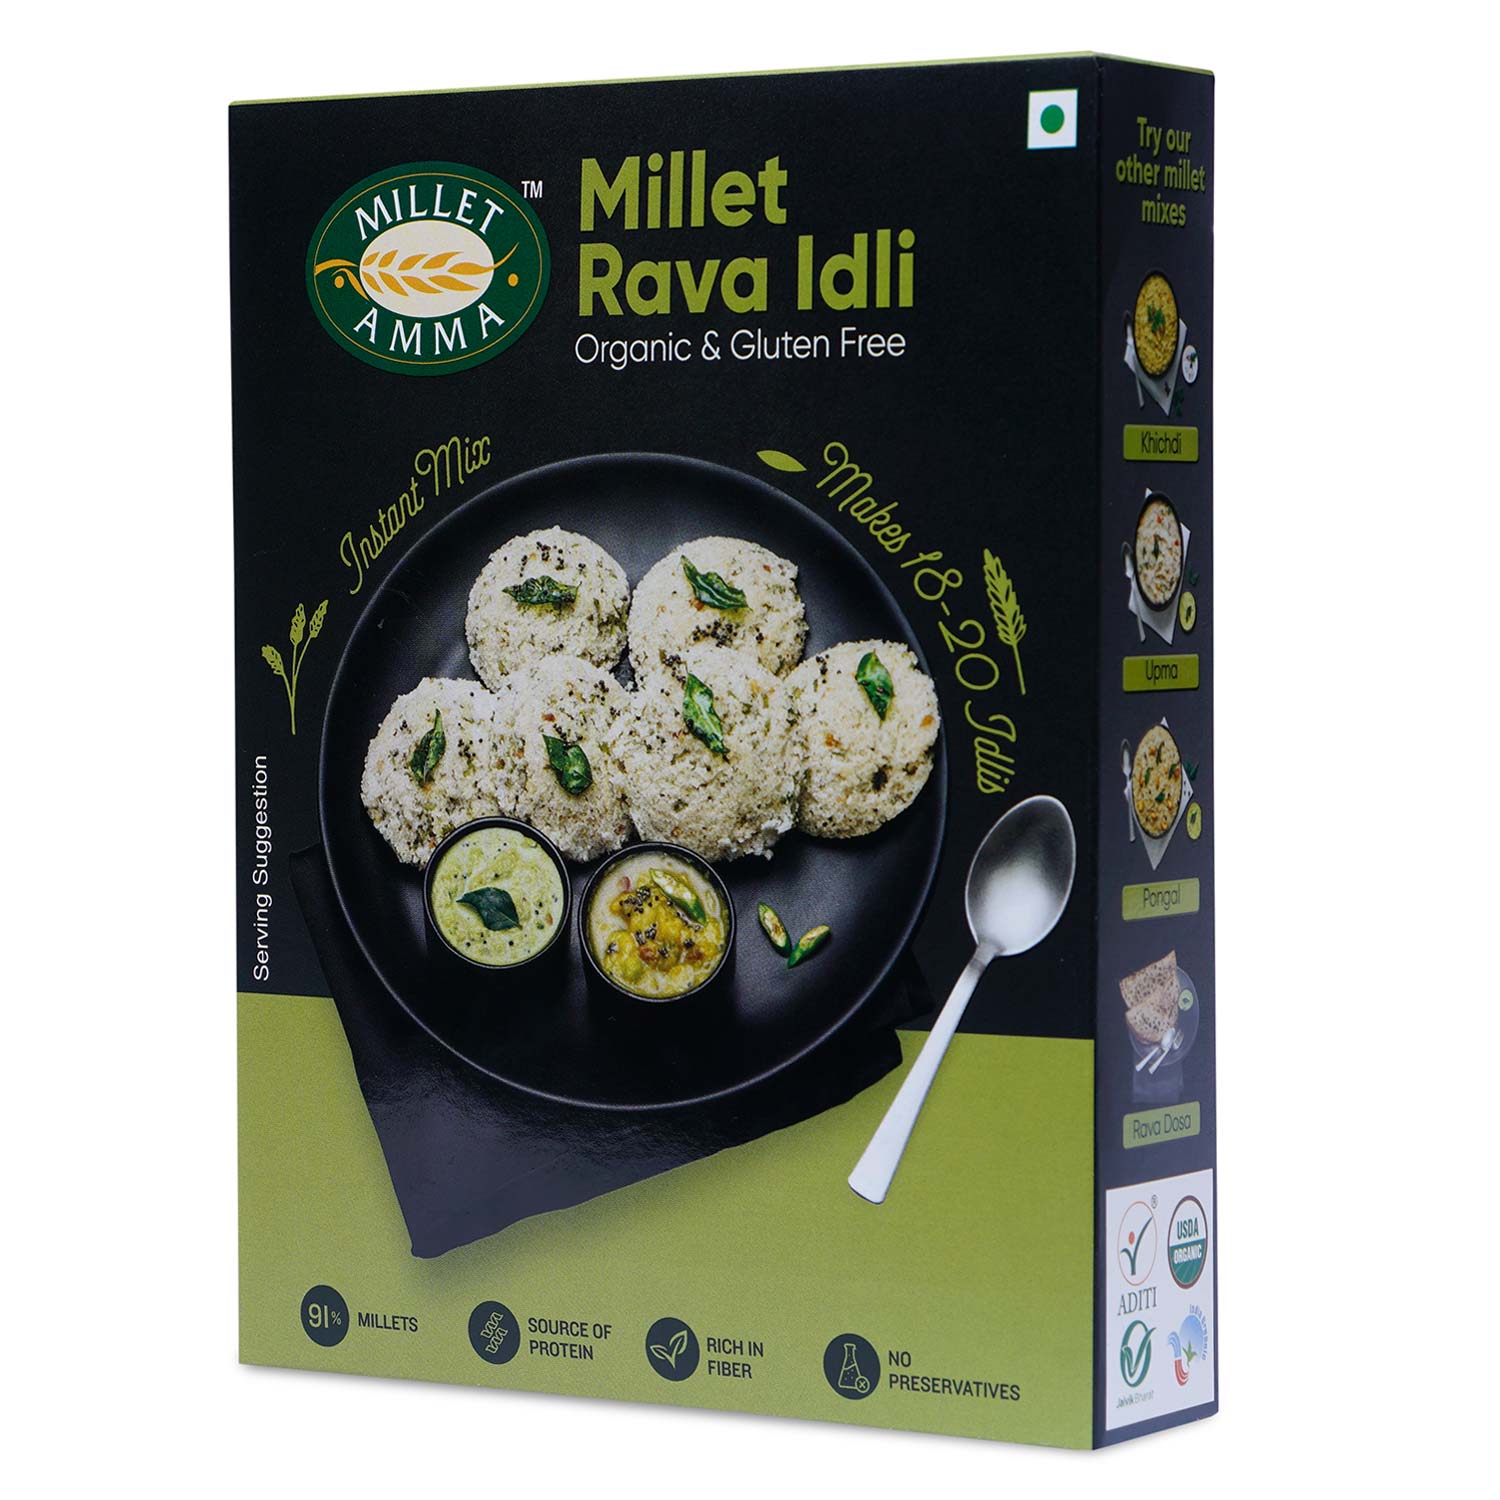 Millet Rava Dosa Mix 250g + Millet Rava Idli Mix 250g